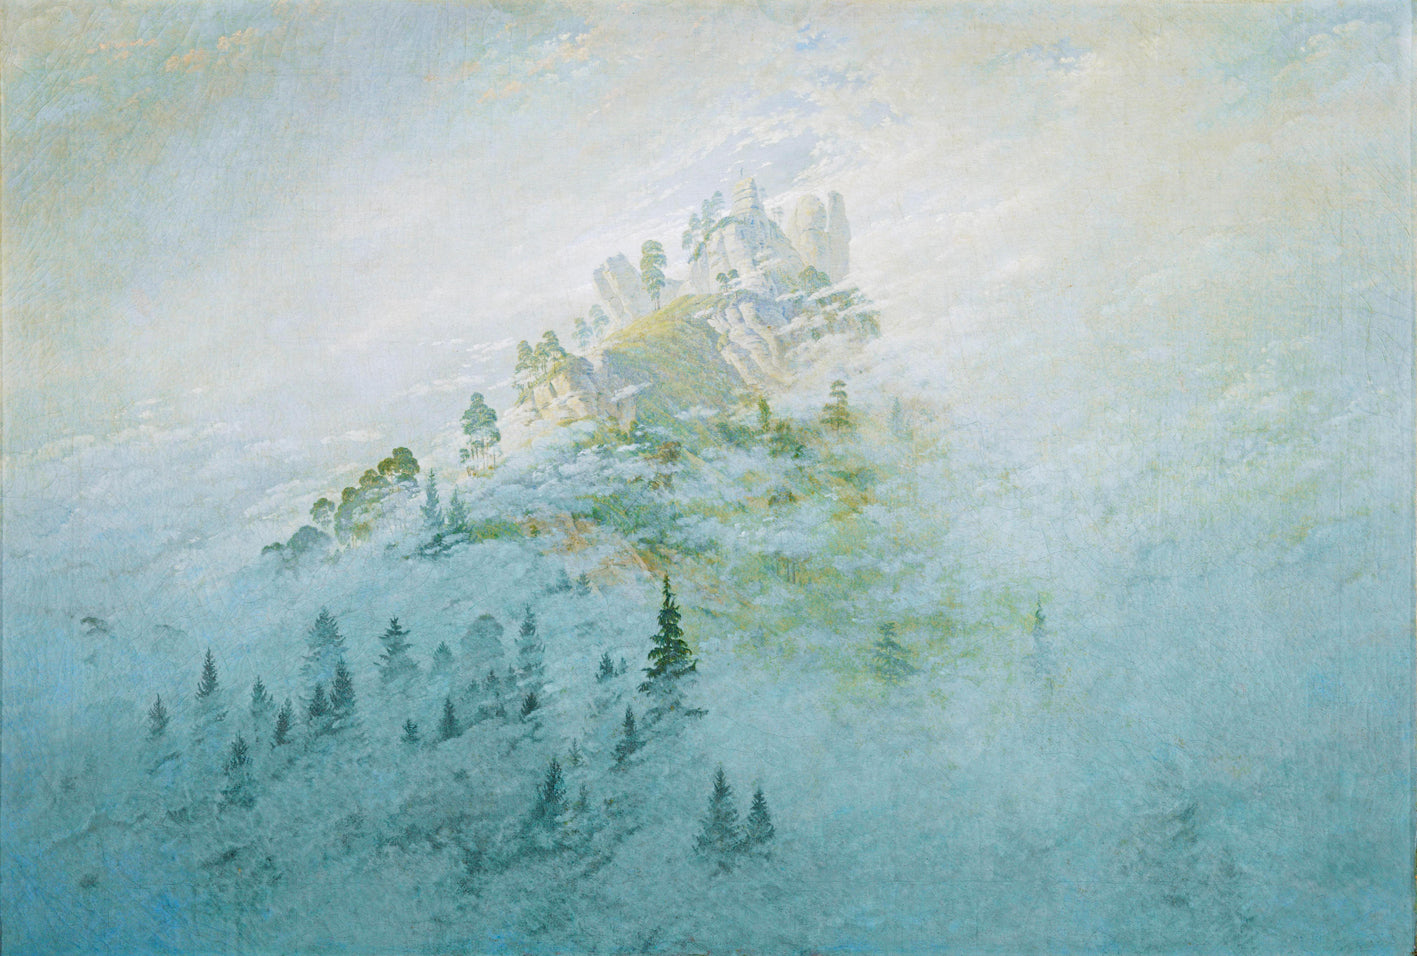 Friedrich Caspar David - Morning mist in the mountains